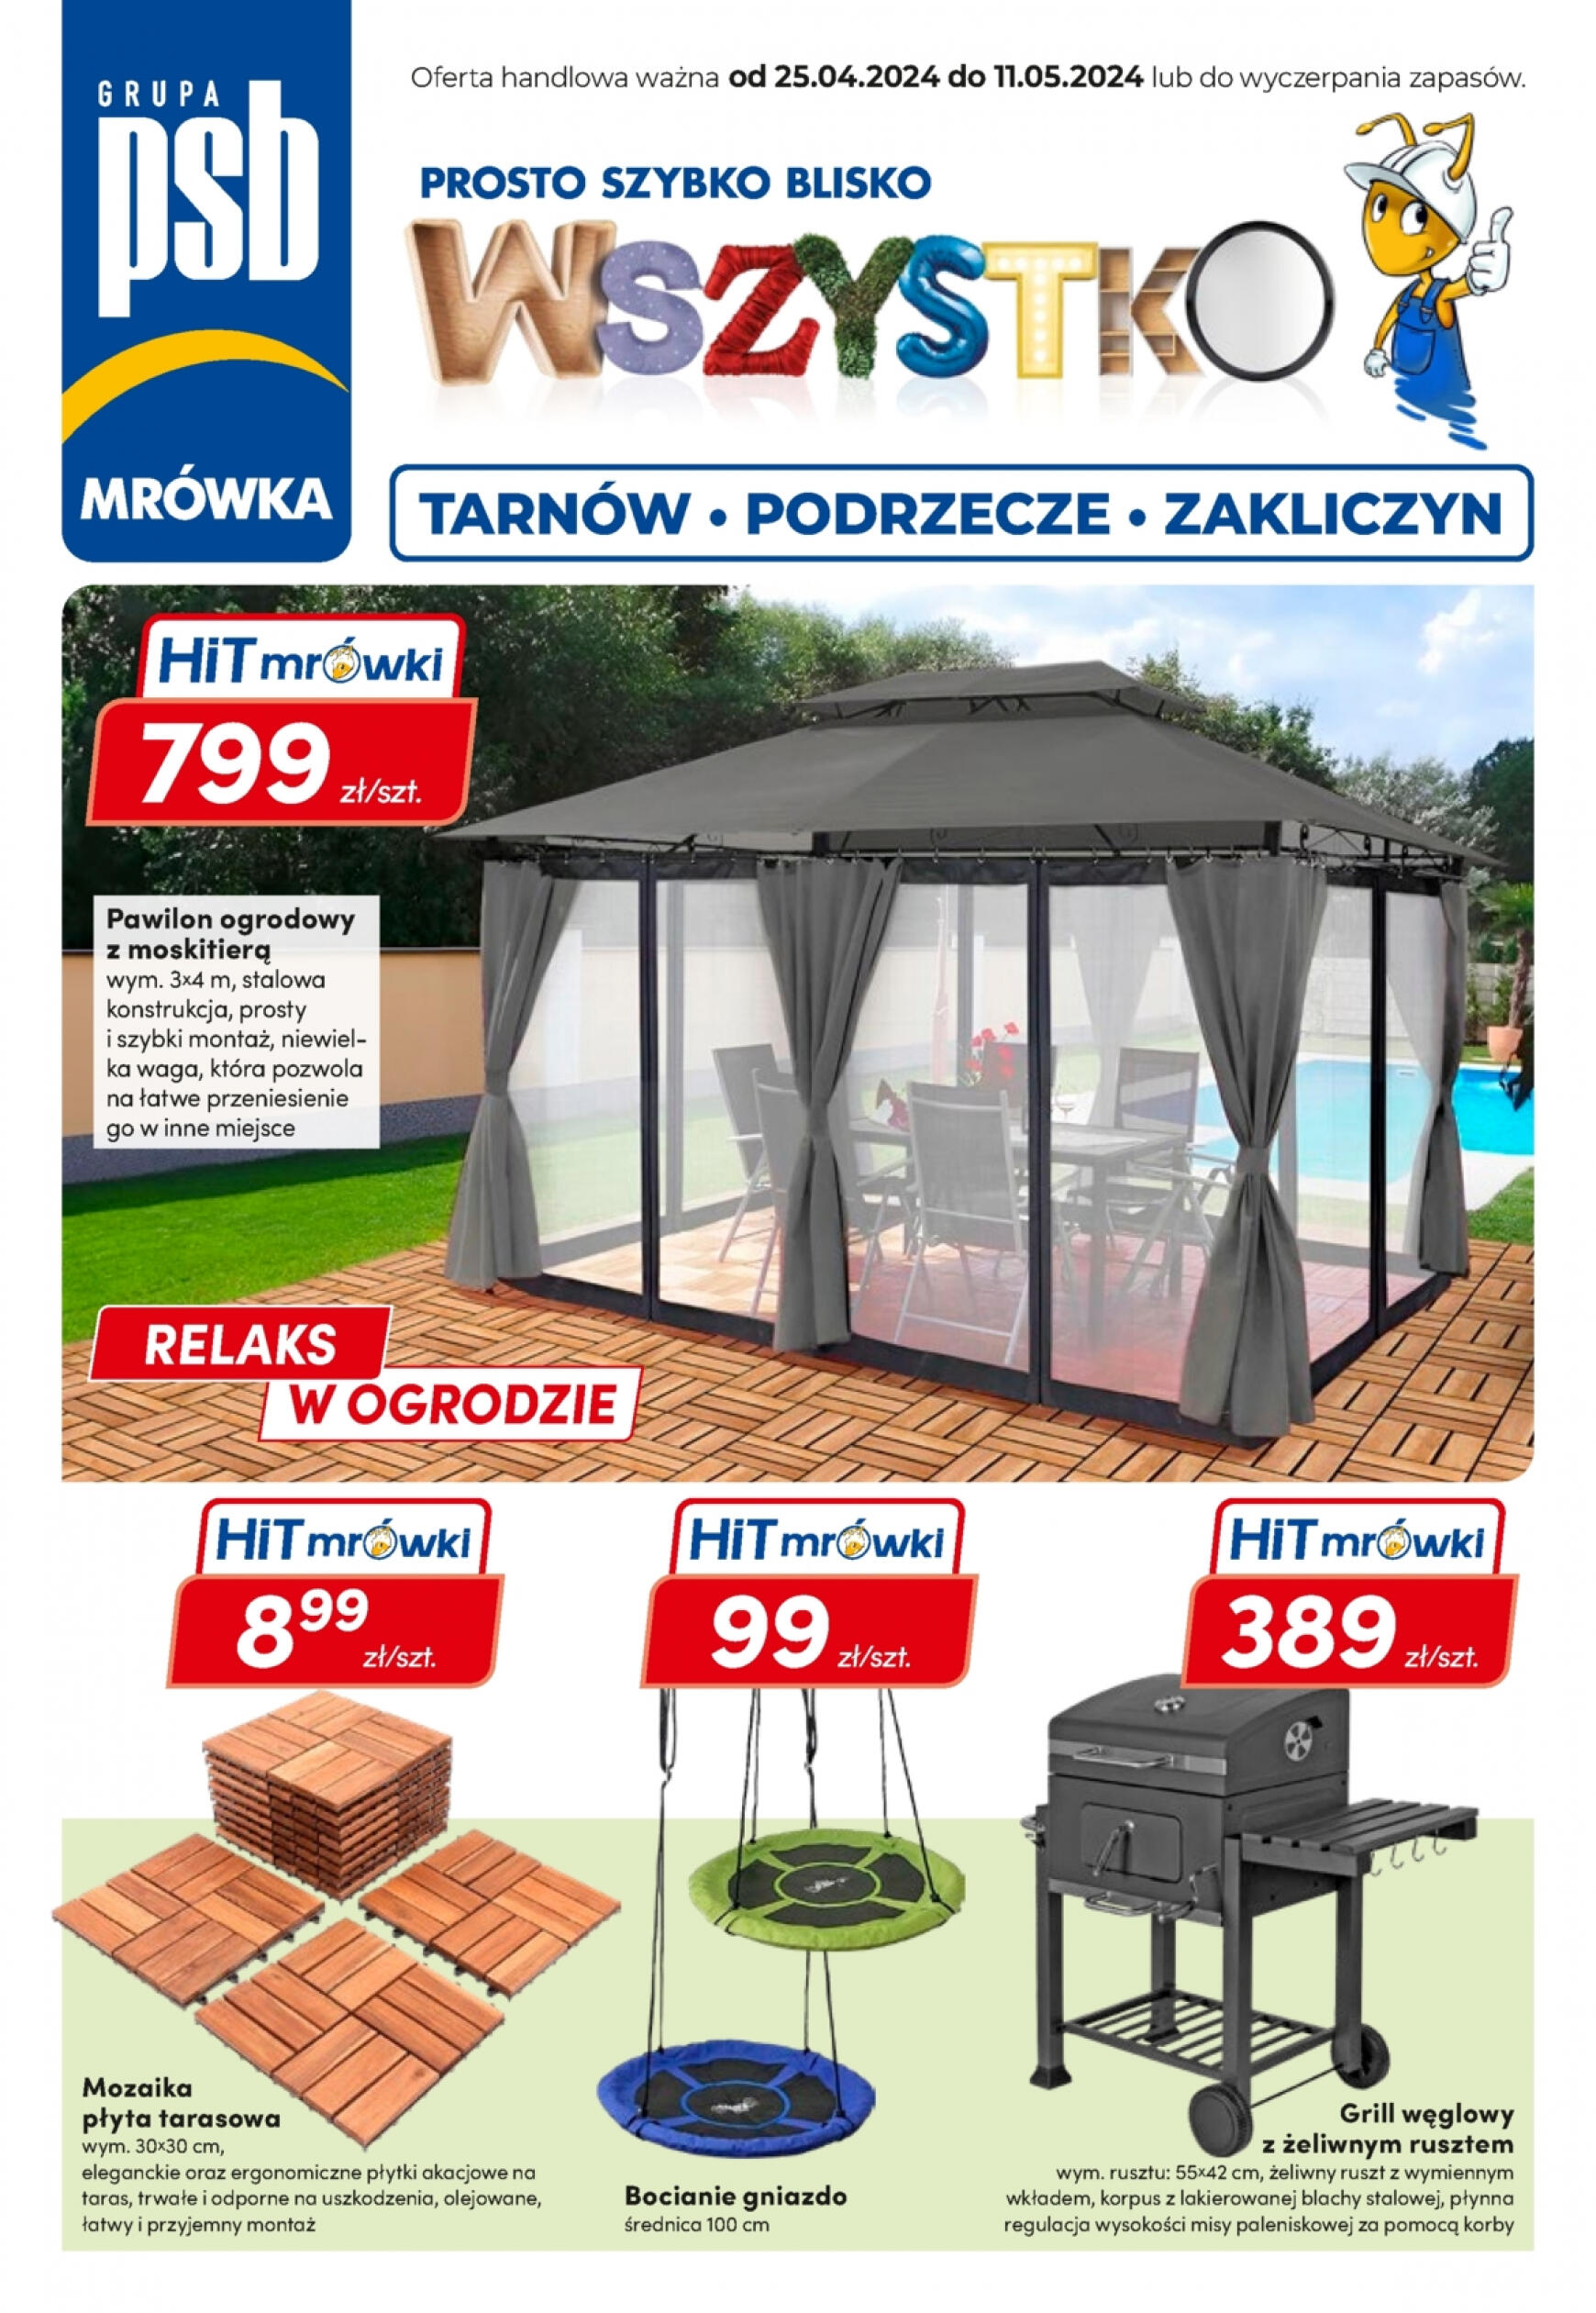 mrowka - Mrówka - Kamienna Góra gazetka aktualna ważna od 25.05. - 11.06. - page: 1